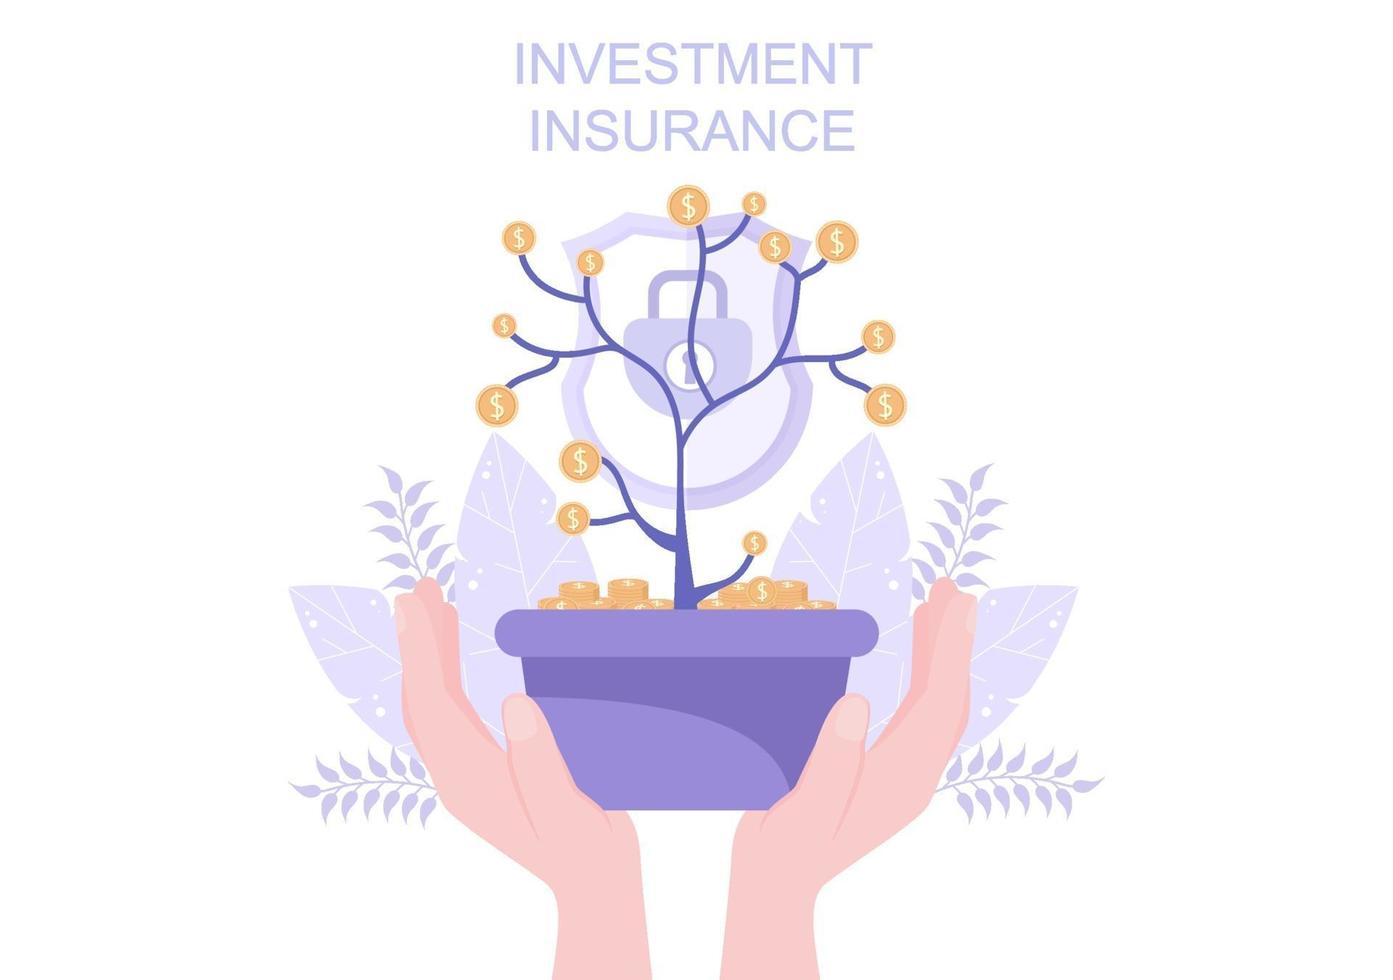 illustrazione di assicurazione di investimento per le imprese con protezione del denaro, risparmio, scudo o progettazione di sicurezza finanziaria vettore